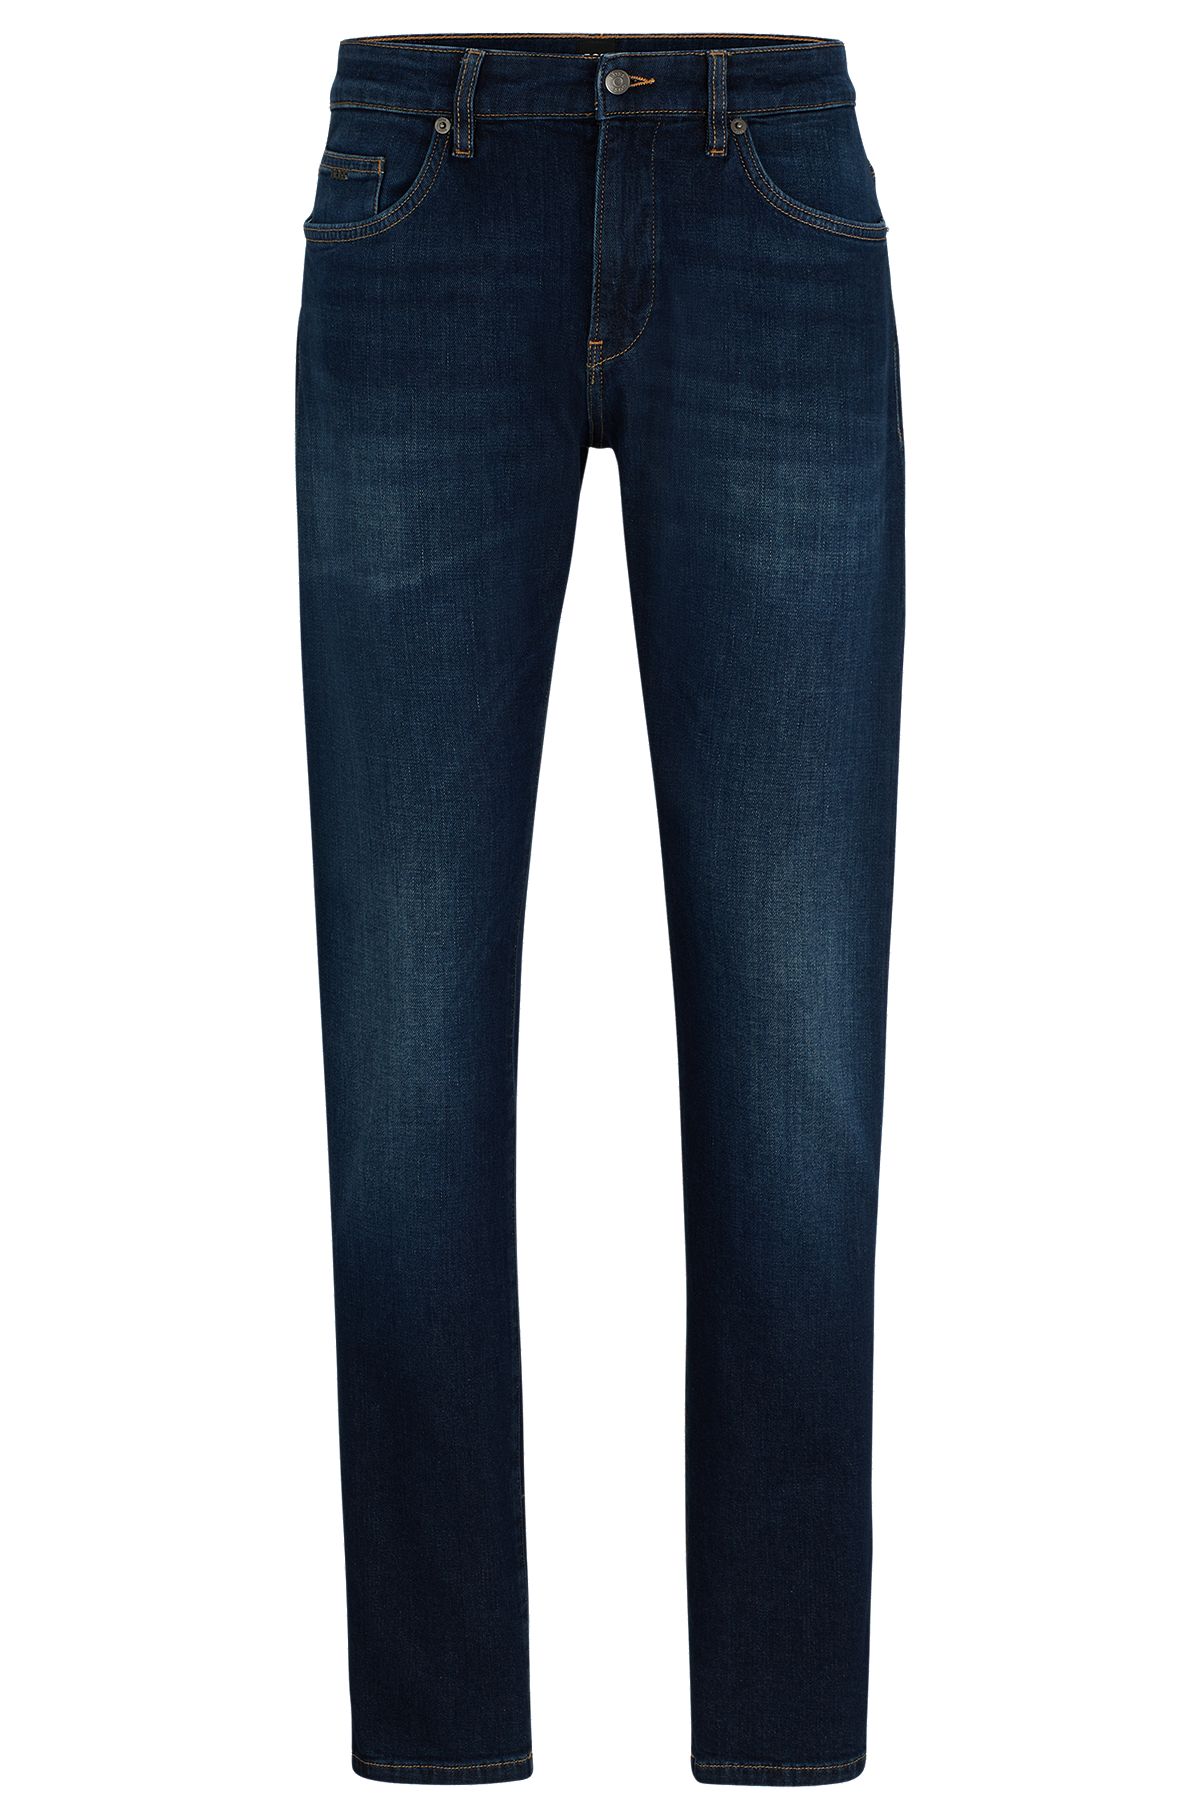 Blaue Slim-Fit Jeans aus italienischem Denim mit Kaschmir-Haptik, Dunkelblau